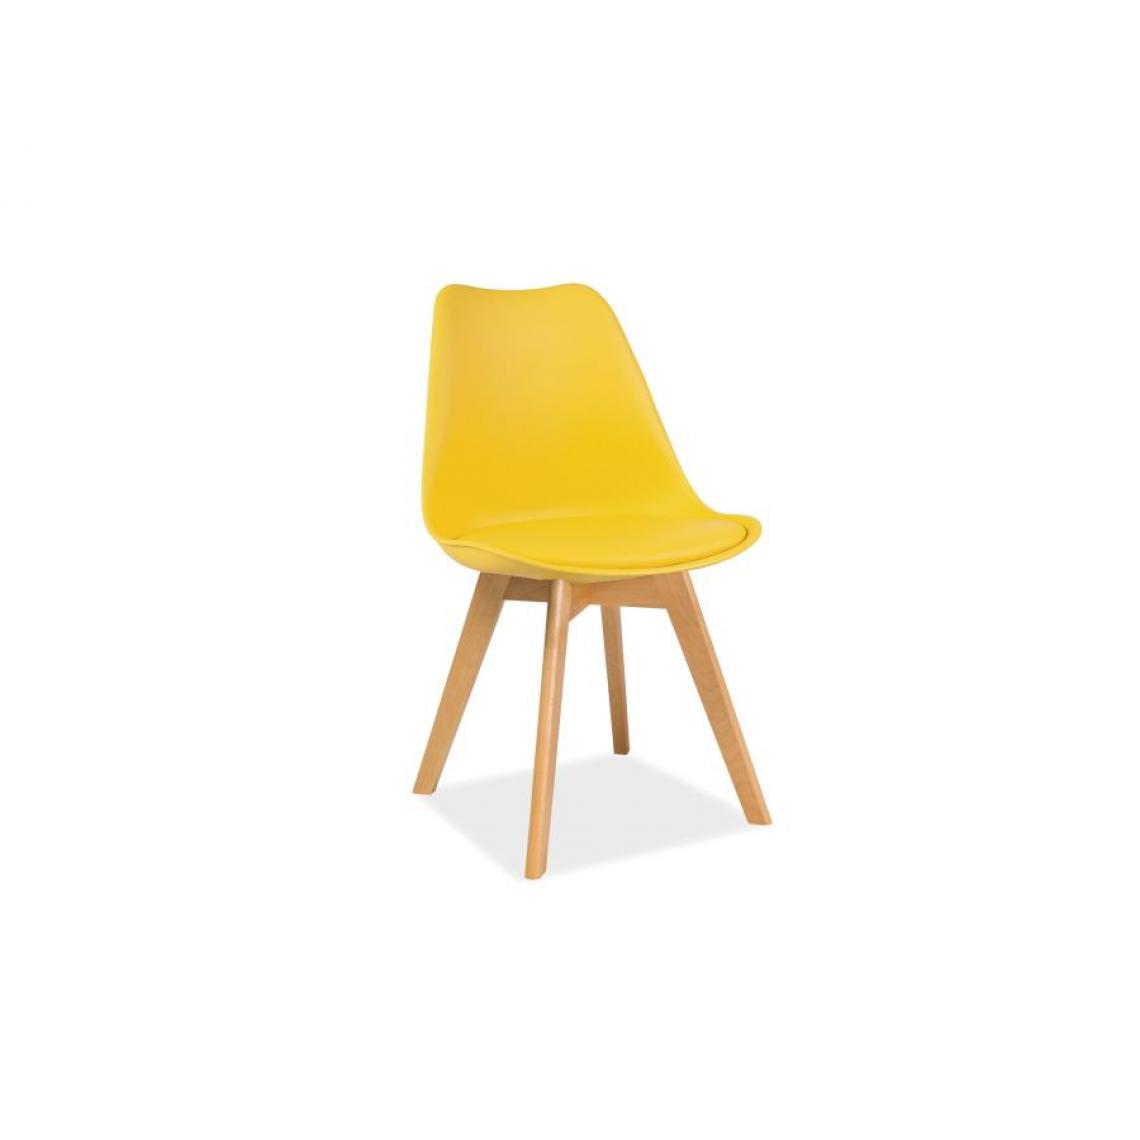 Hucoco - KRISTUZ | Chaise style scandinave salle à manger/salon | 83x49x43 cm | Assise et dossier en PP | Base en bois - Jaune - Chaises